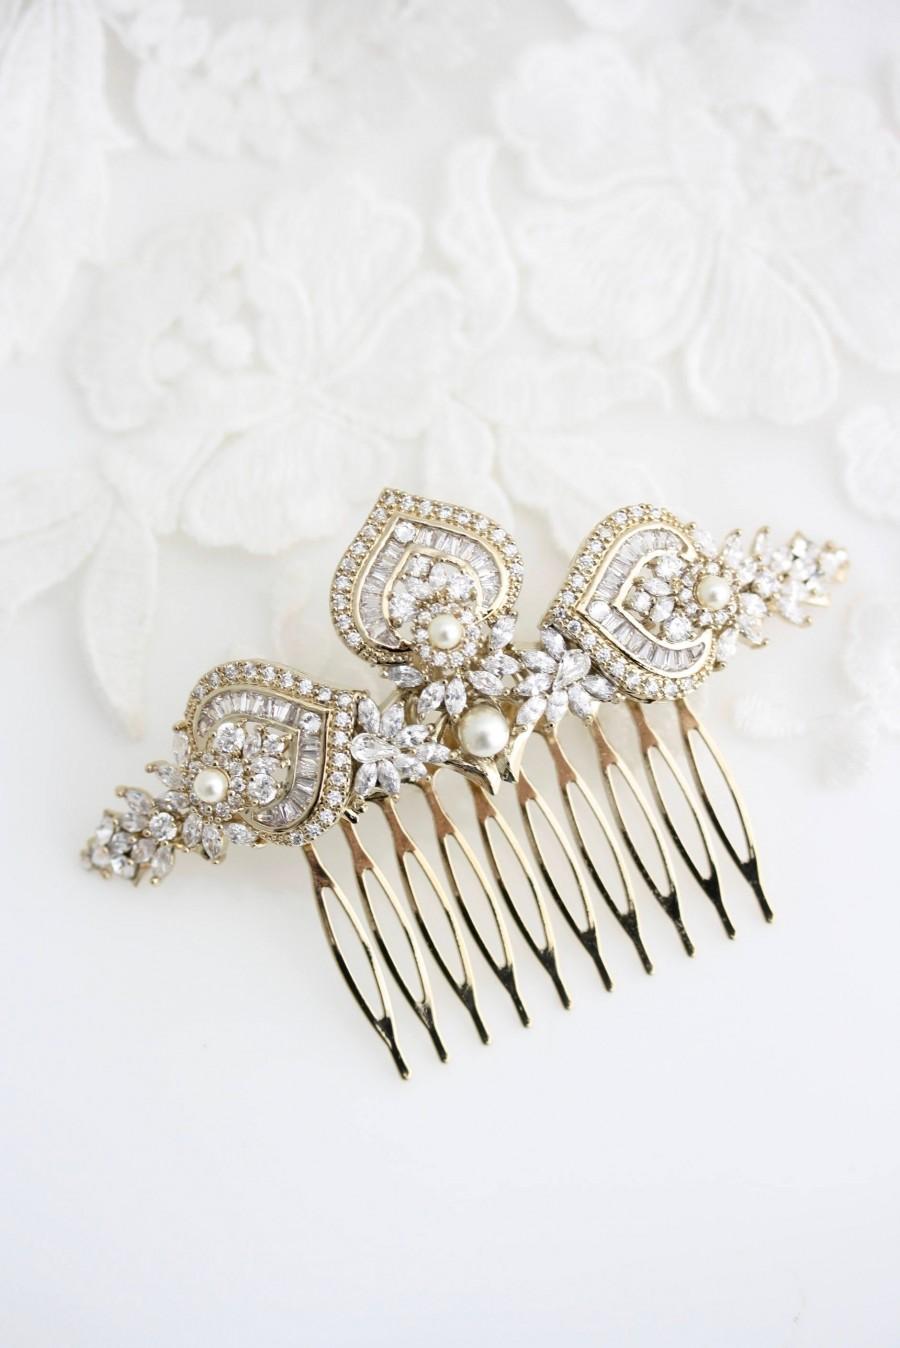 Hochzeit - Gold Bridal Hair Comb Gold Wedding Headpiece Crystal Hair Comb Yellow Gold Wedding Hair Clip Art Deco Bridal Hair Accessories EVIE L